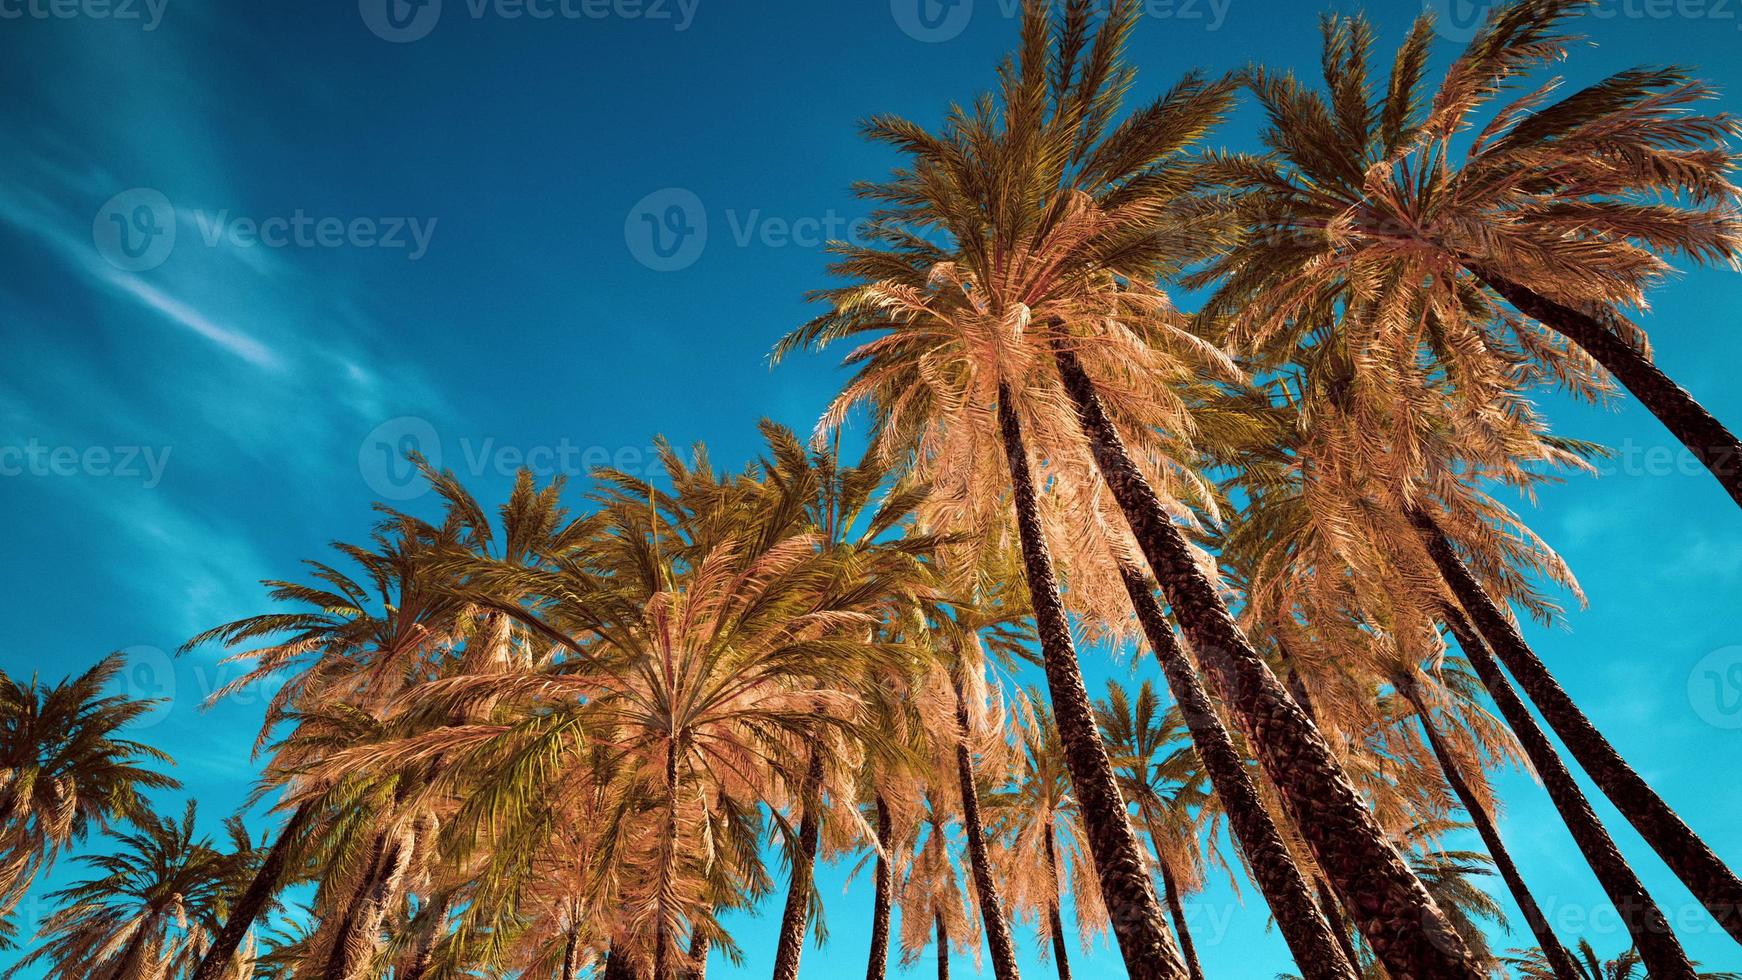 Kokospalmen am blauen Himmel foto